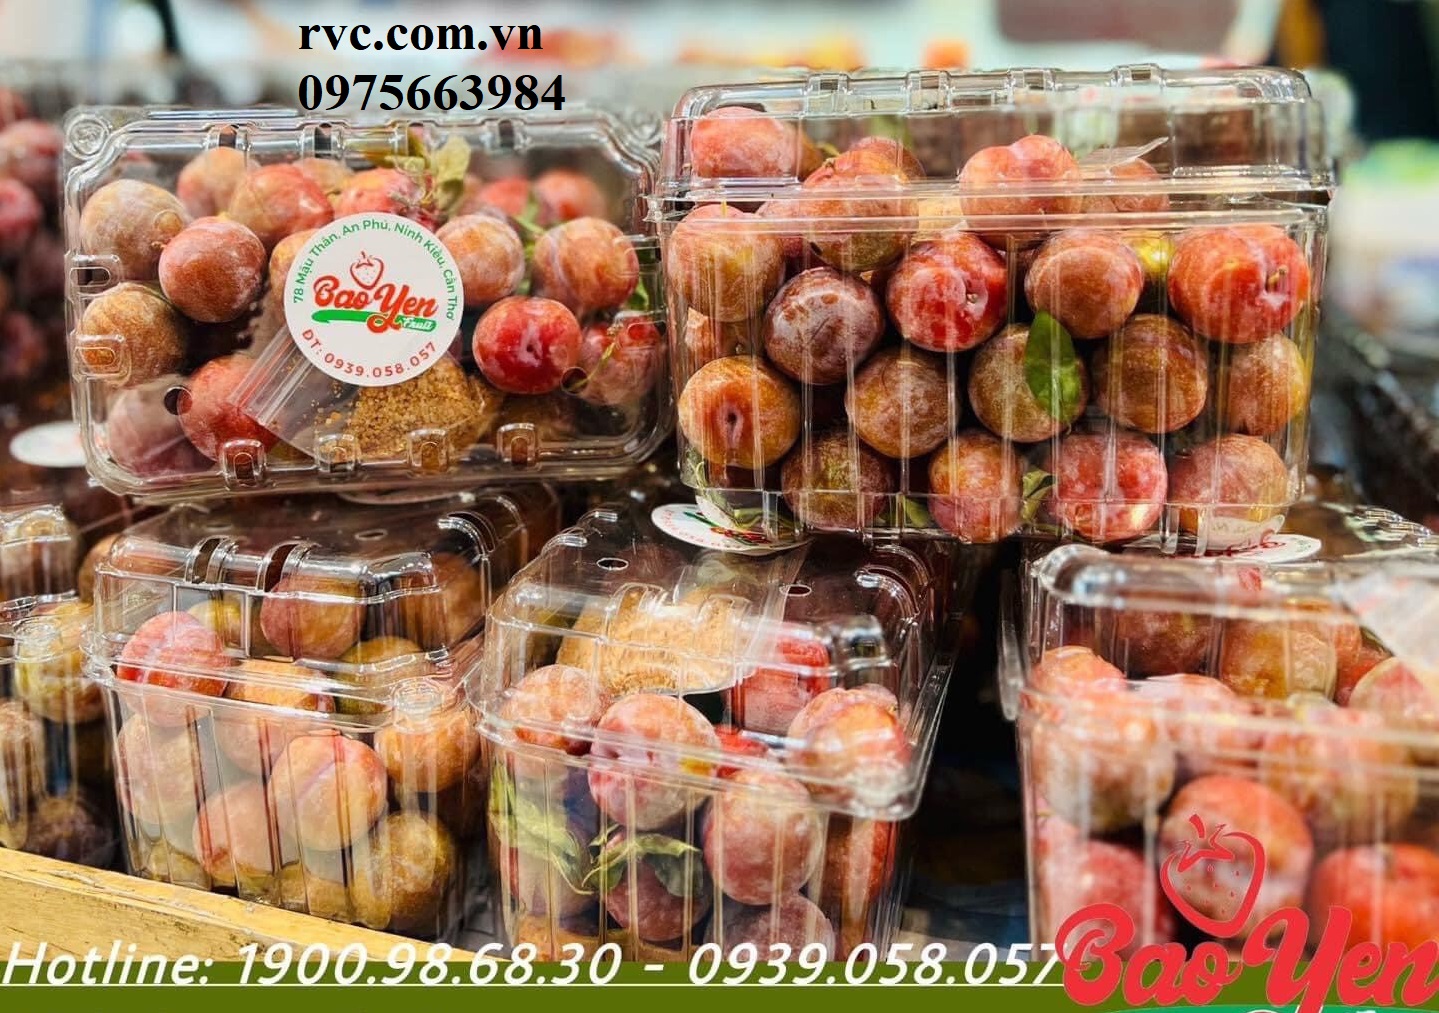 Điểm phân phối hộp nhựa trái cây P1000B uy tín, chất lượng nhất thị trường hiện nay.  1687344466_Hop_dung_man_21.1